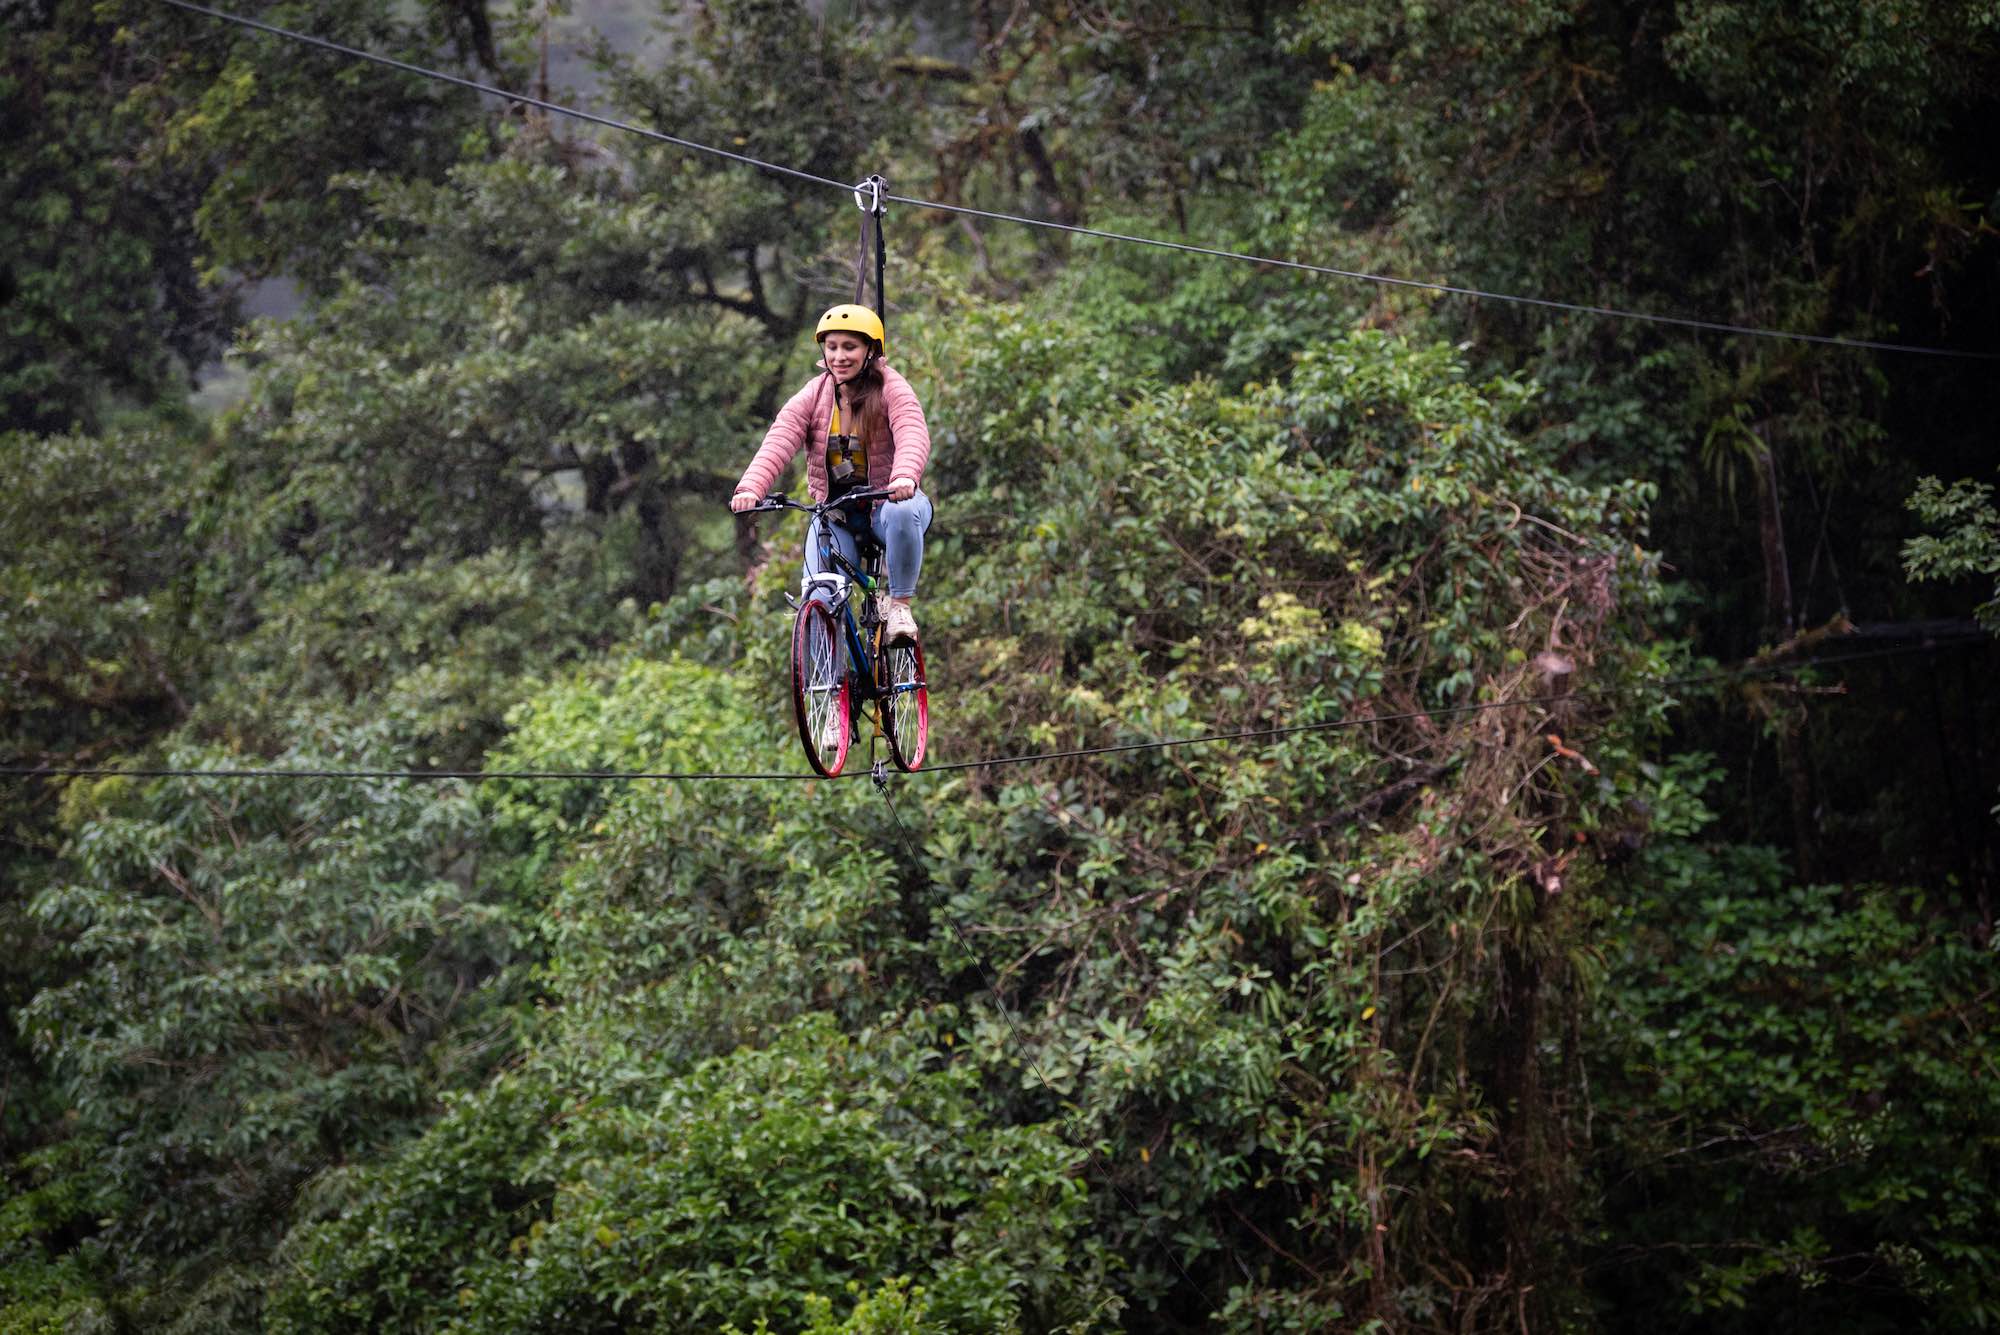 Bicicleta entre la copa de los árboles, nueva atracción en Costa Rica